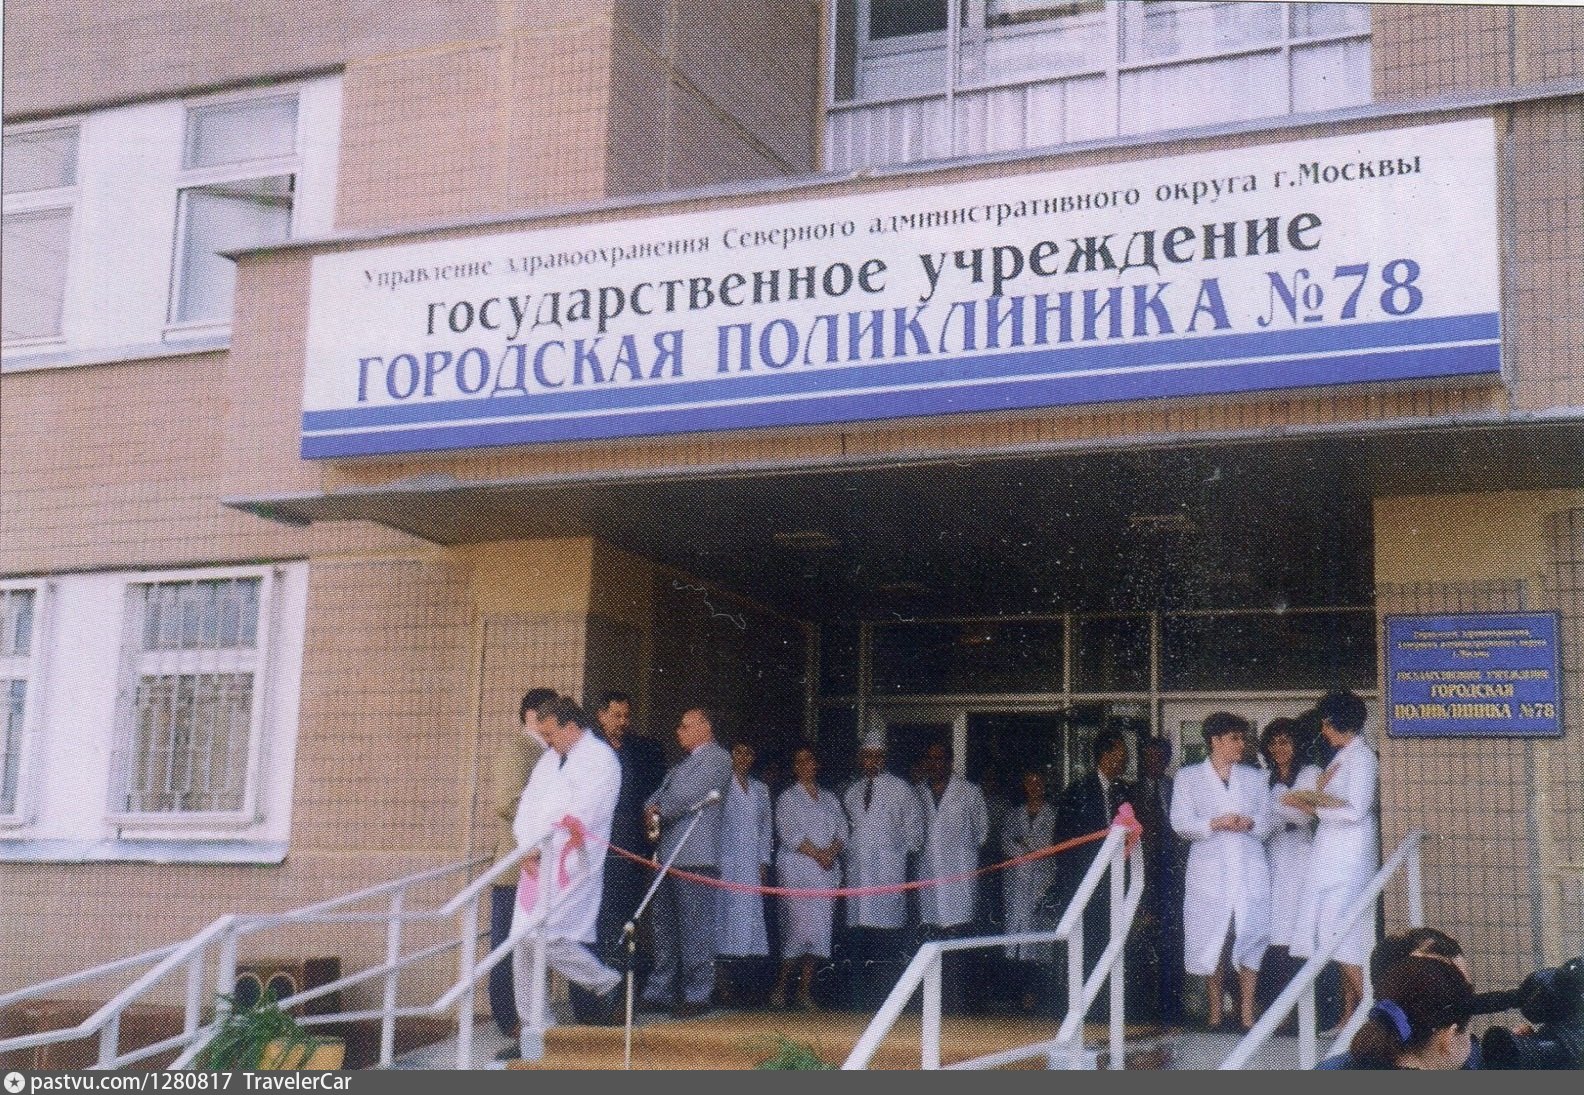 Кдц 6 193. Поликлиники № 86 Дегунинская.